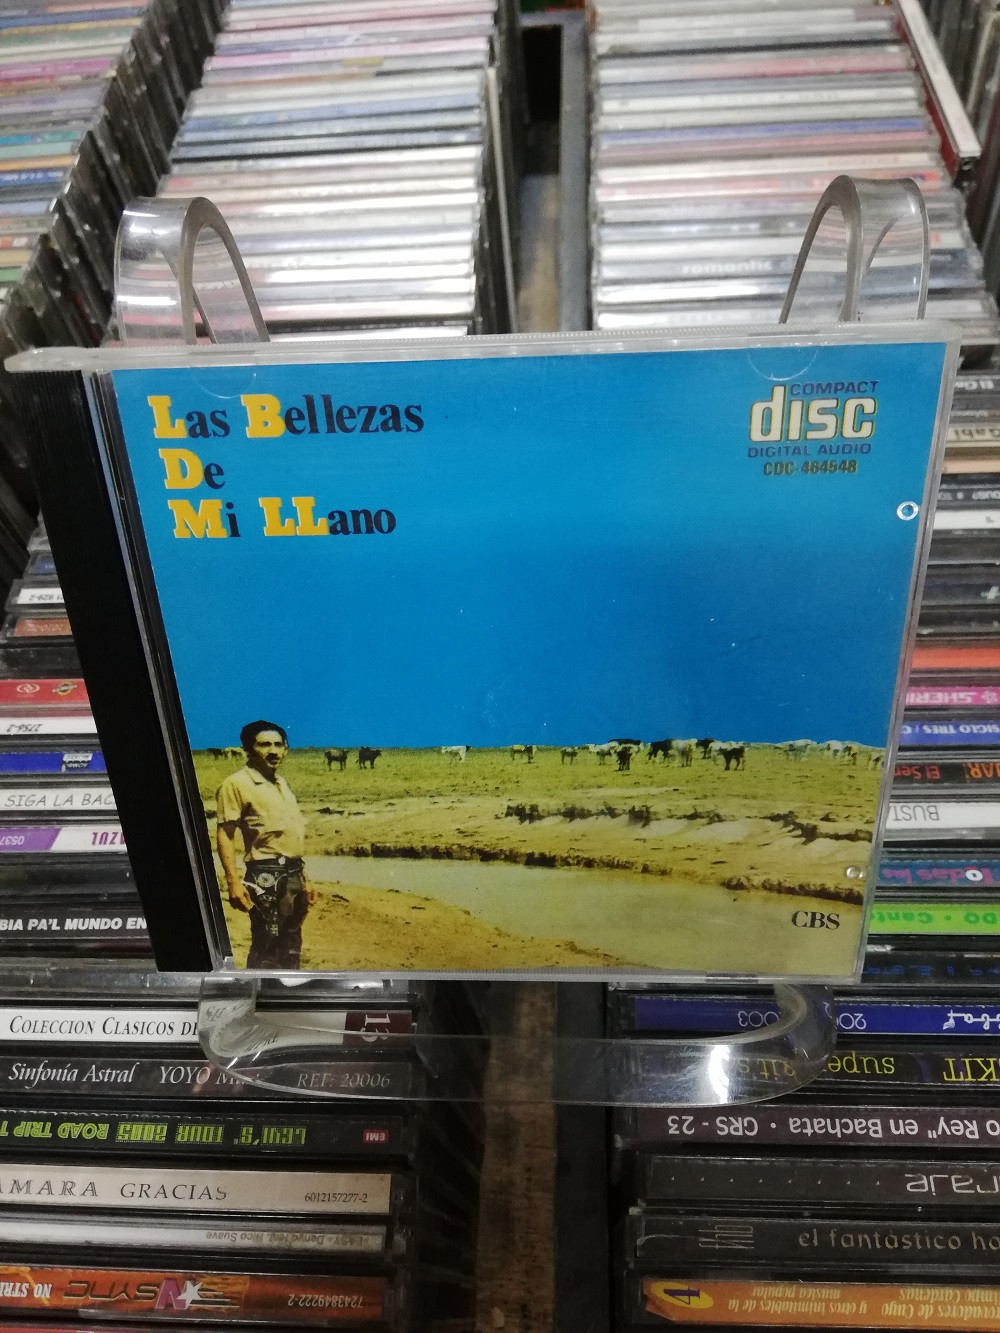 Imagen CD LA BELLEZA DE LLANO